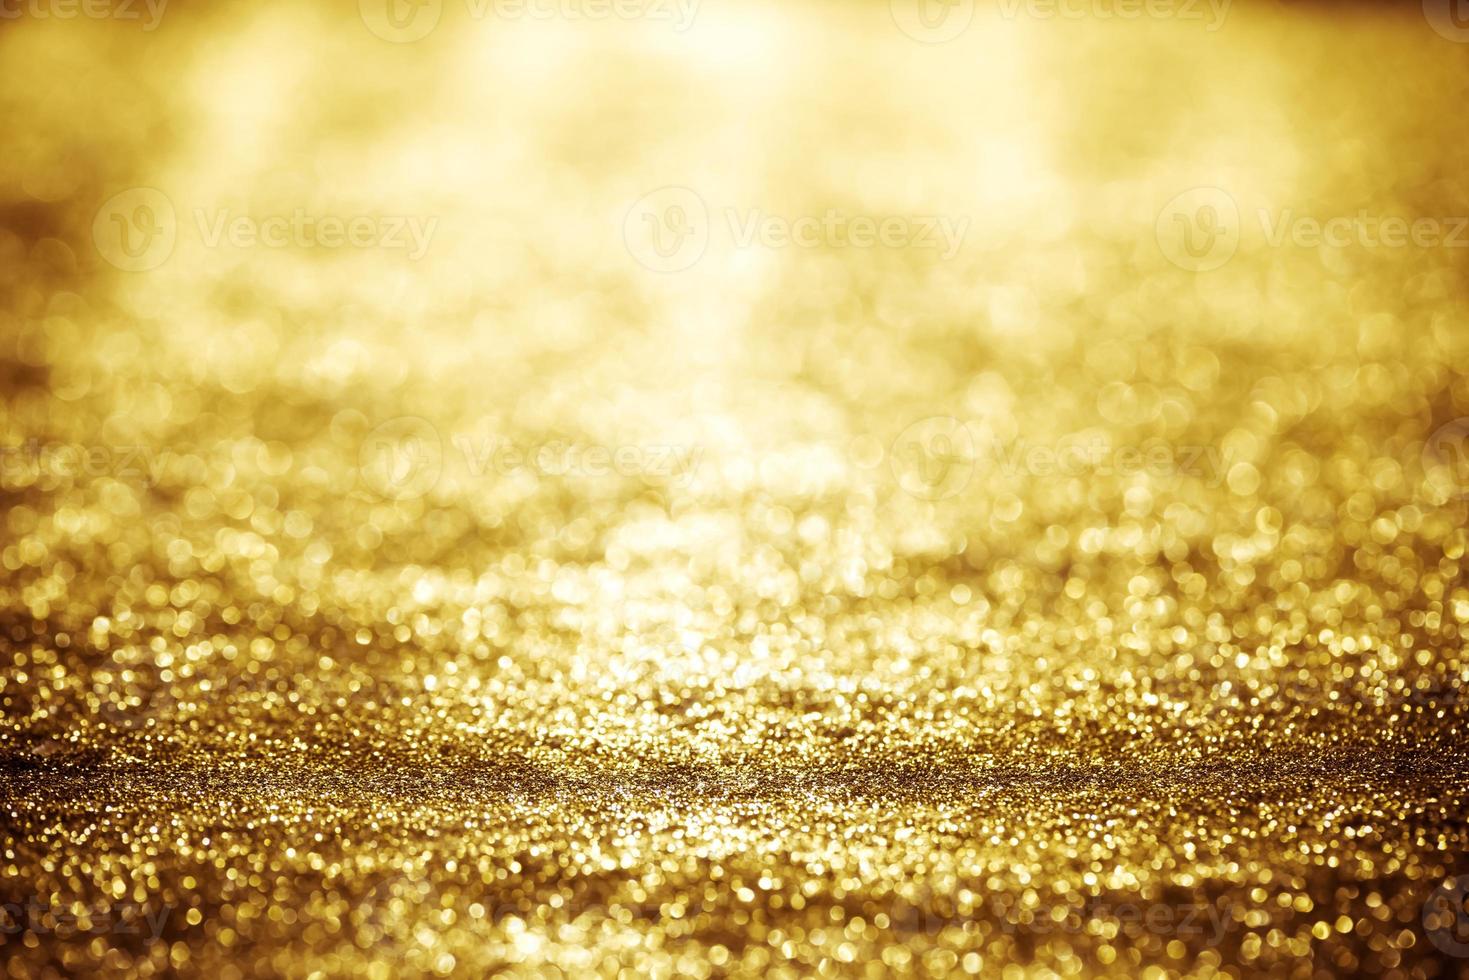 gouden glitter bokeh verlichting textuur wazig abstracte achtergrond voor verjaardag, jubileum, bruiloft, oudejaarsavond of kerst foto